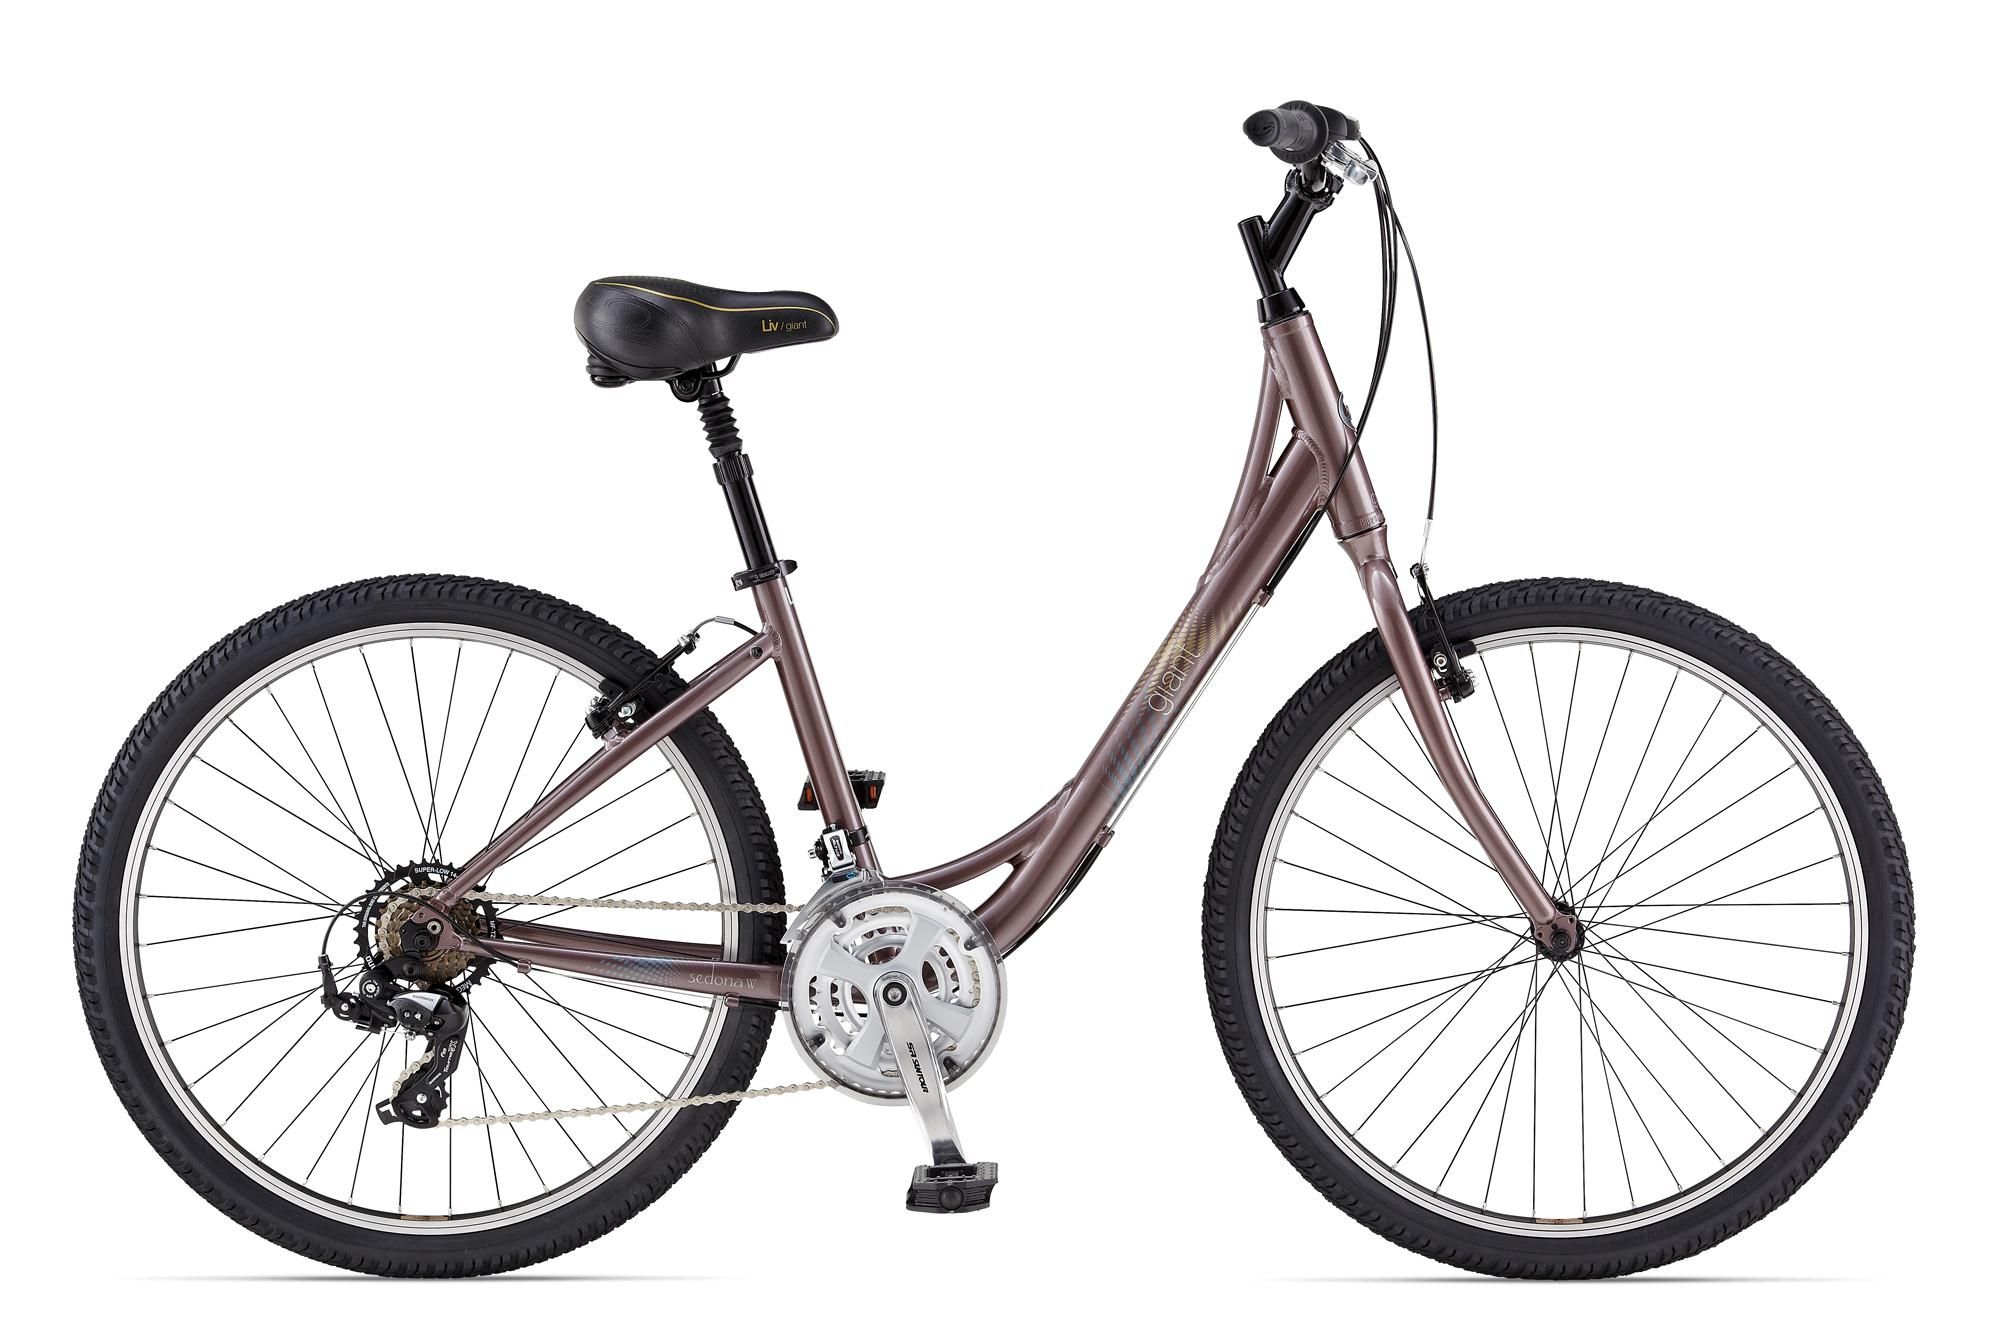  Велосипед Giant Sedona W 2014